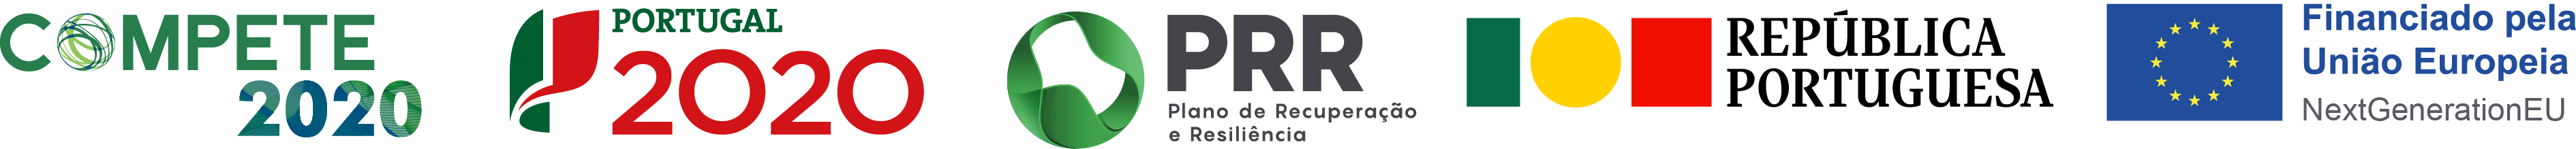 Logotipos finaciamentos P2020, Compete 2020 e PRR